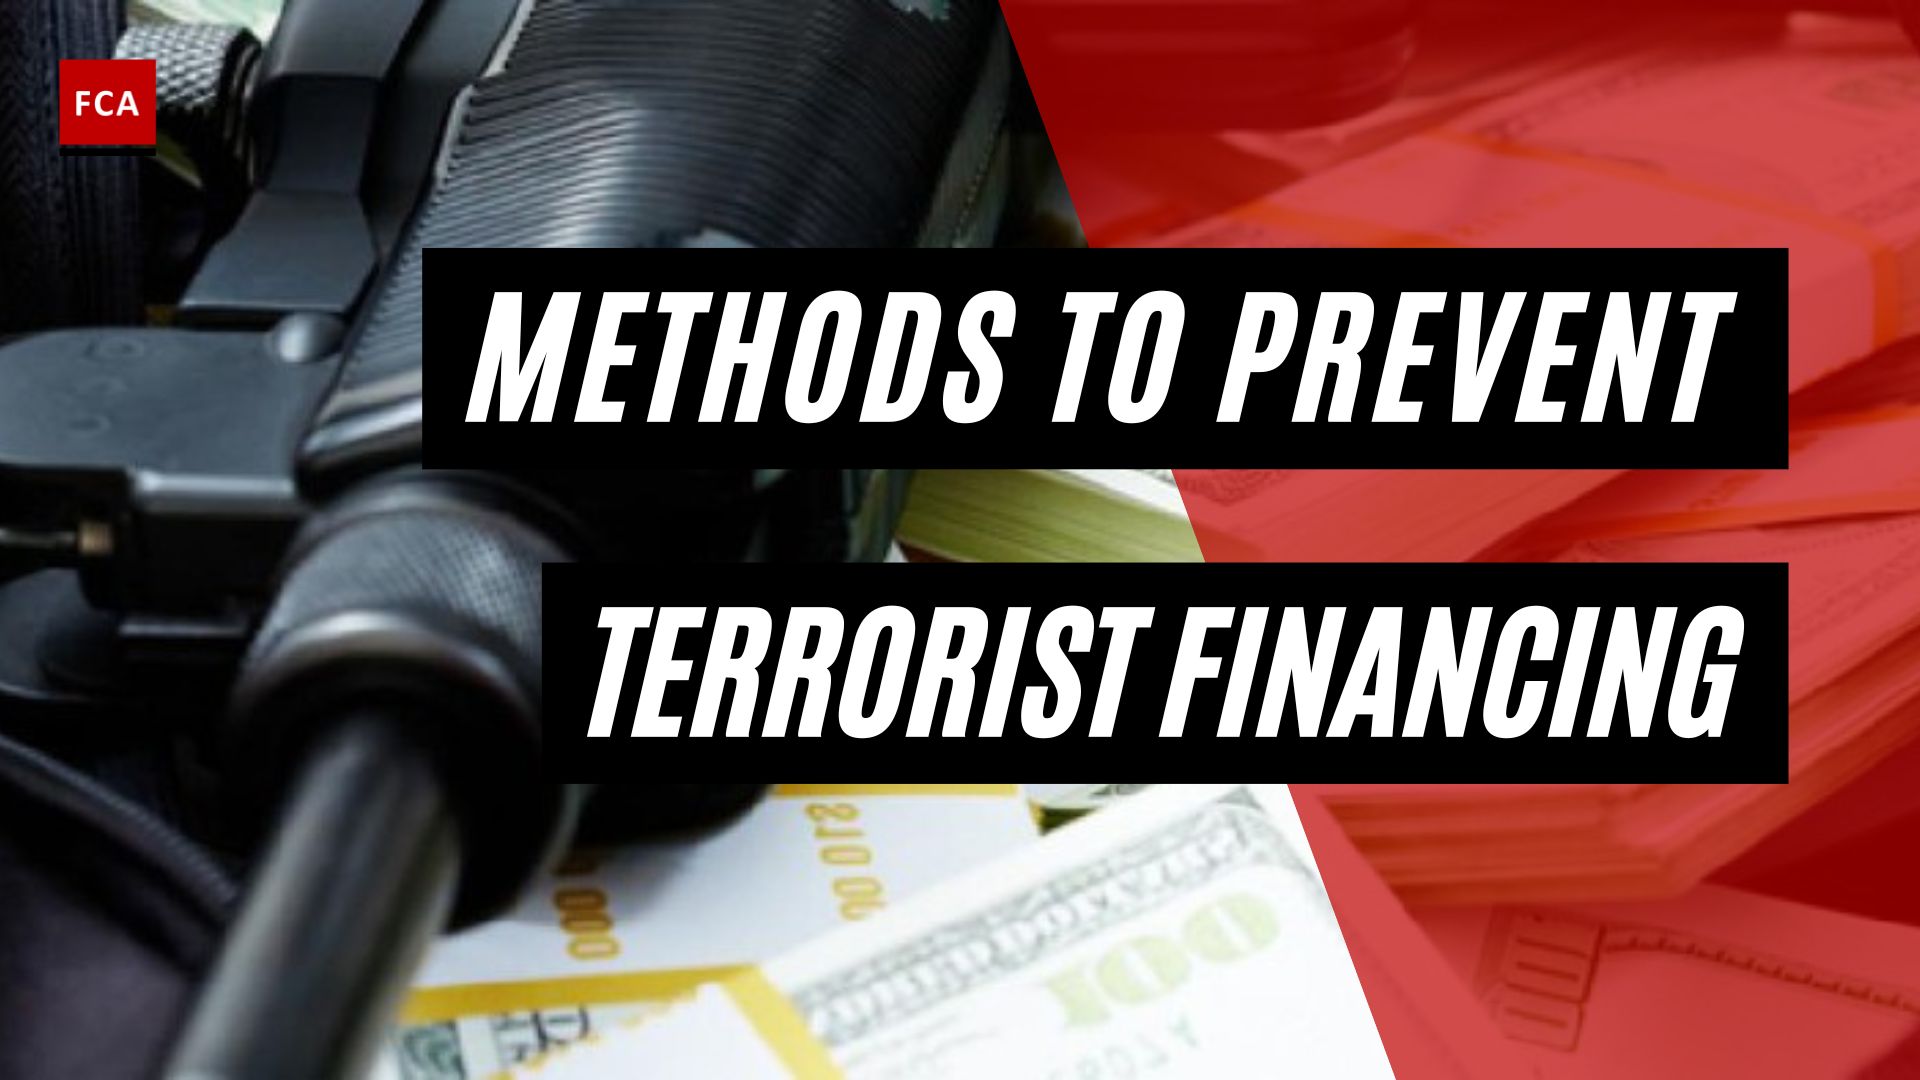 Methods To Prevent Terrorist Financing